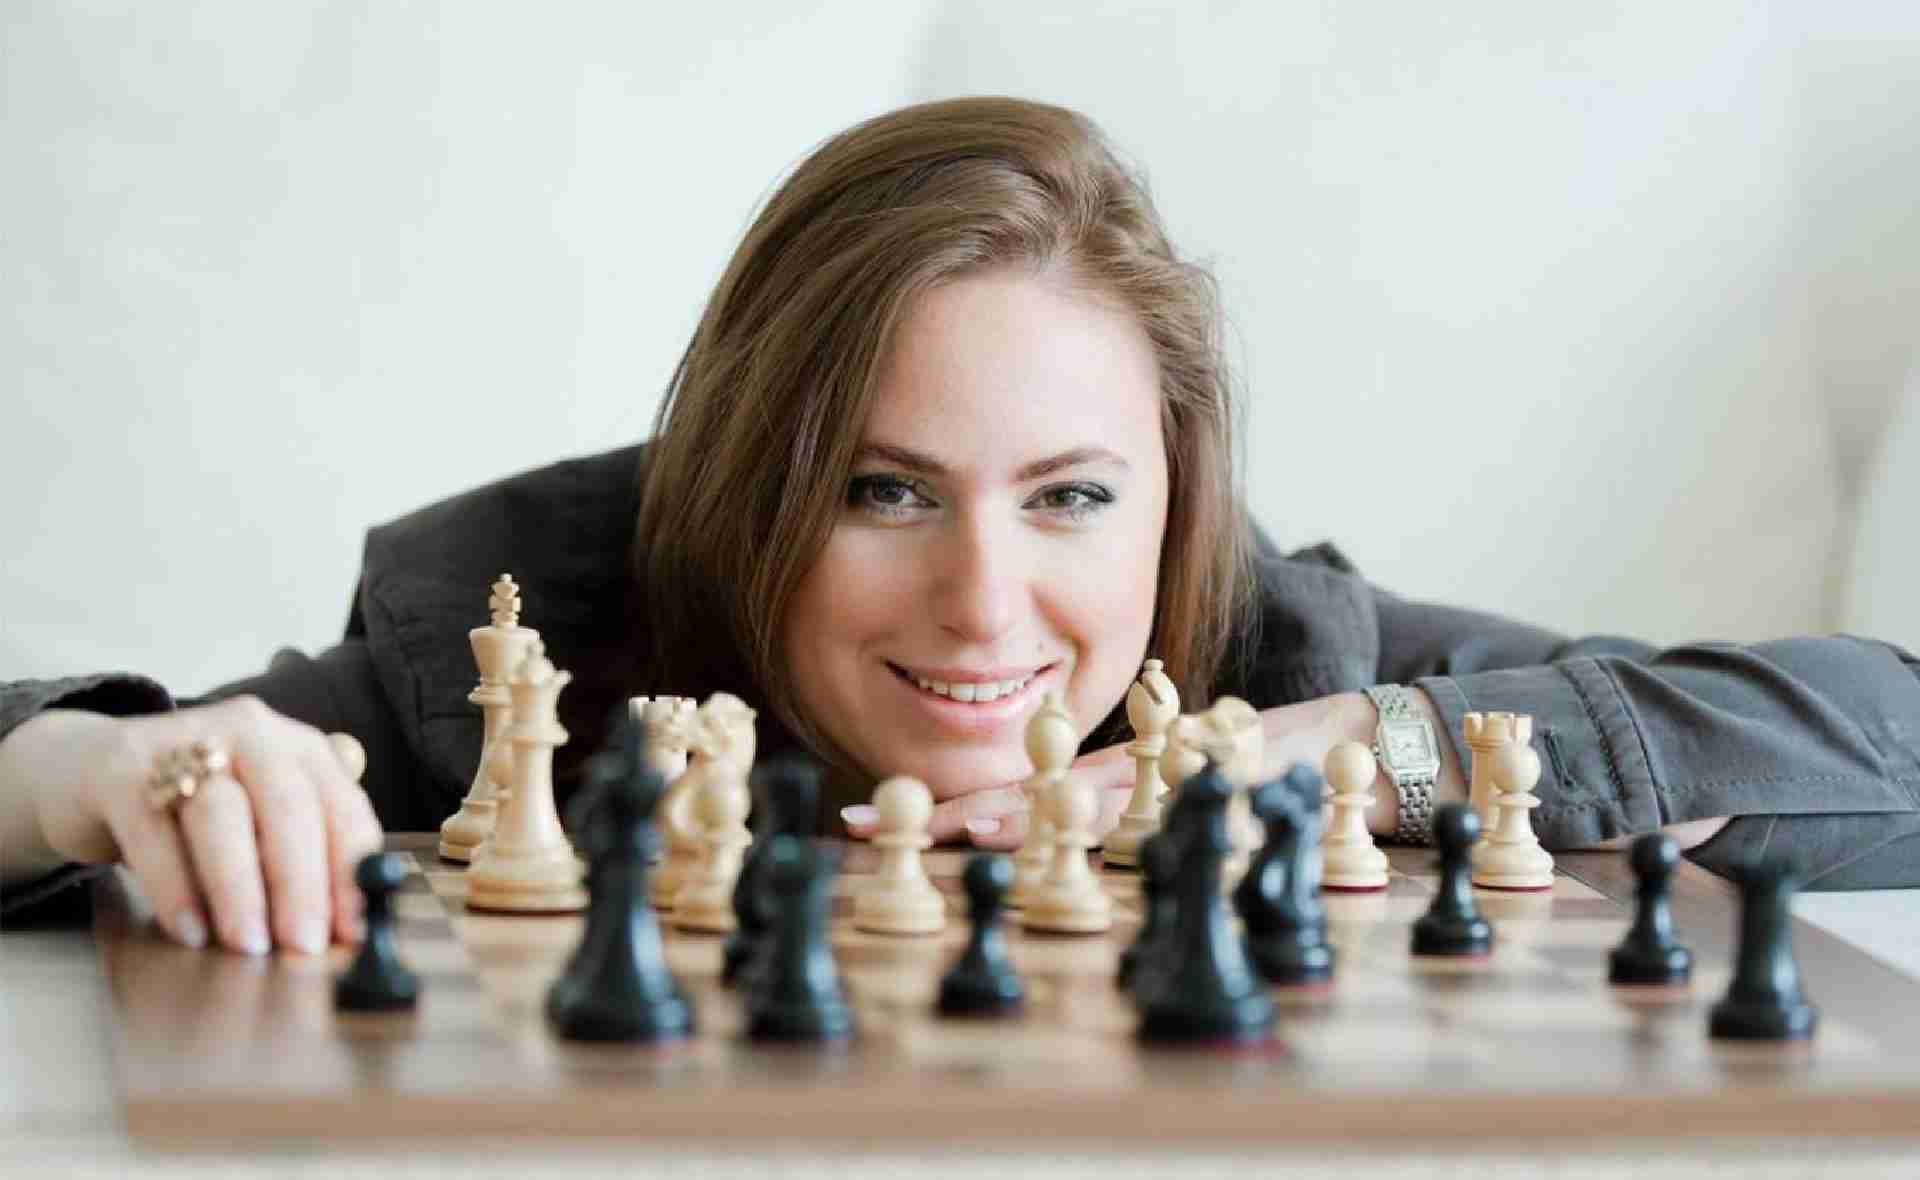 Polgár Judit (született 1976. július 23-a), magyar sakkozó, nemzetközi nagymester a sakktörténet legjobb női sakkozója.
(A kép forrása: juditpolgar.com)